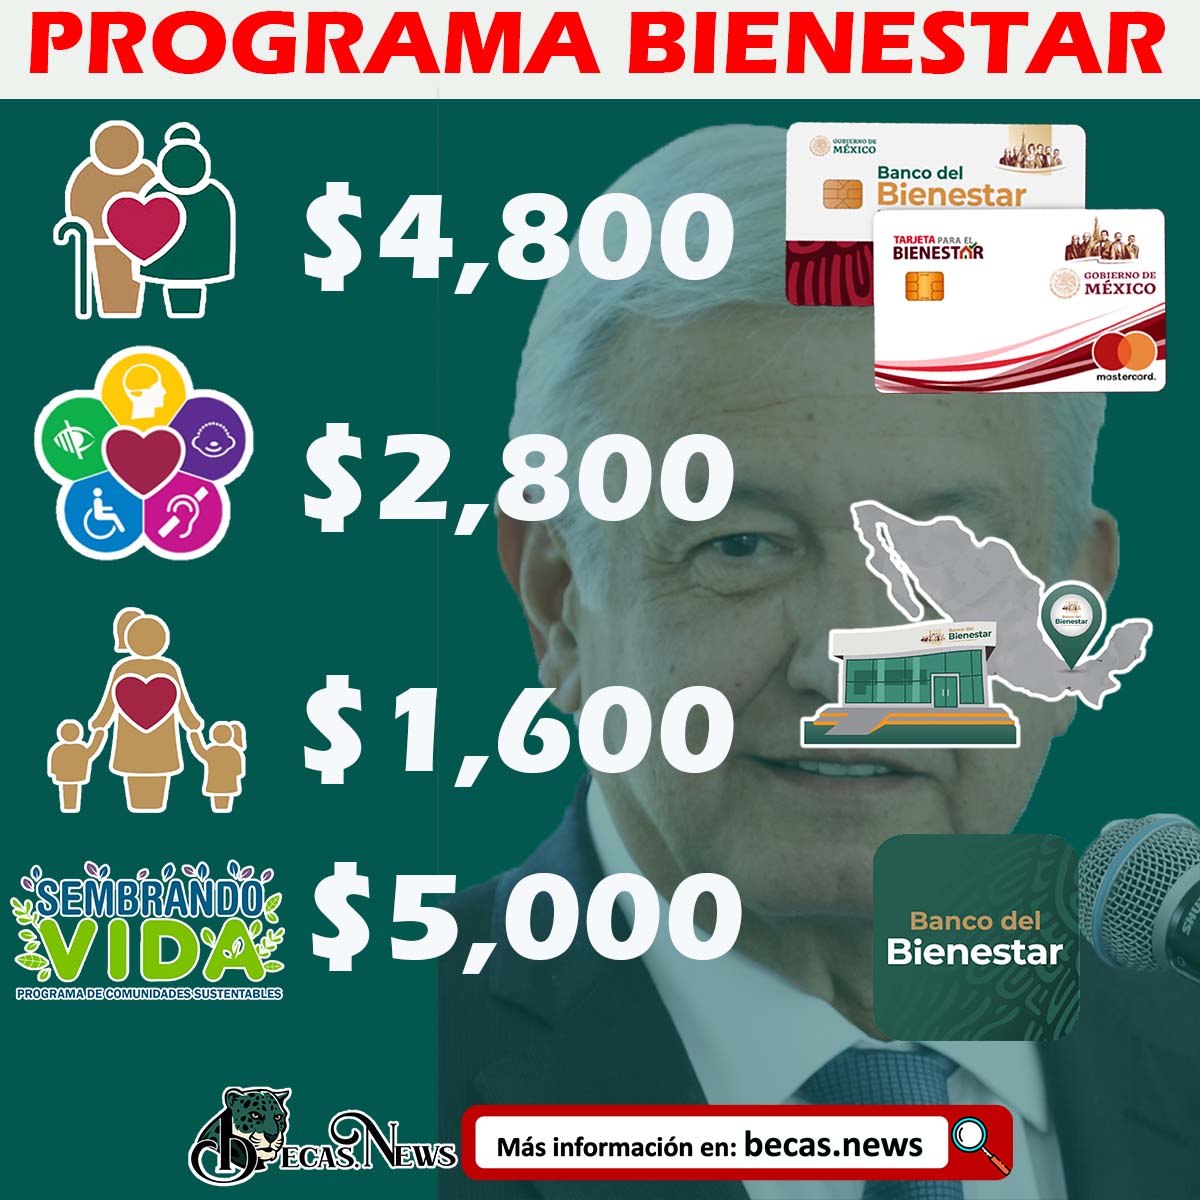 ¡Atención beneficiarios! CALENDARIO DE PAGOS Programas del Bienestar 202